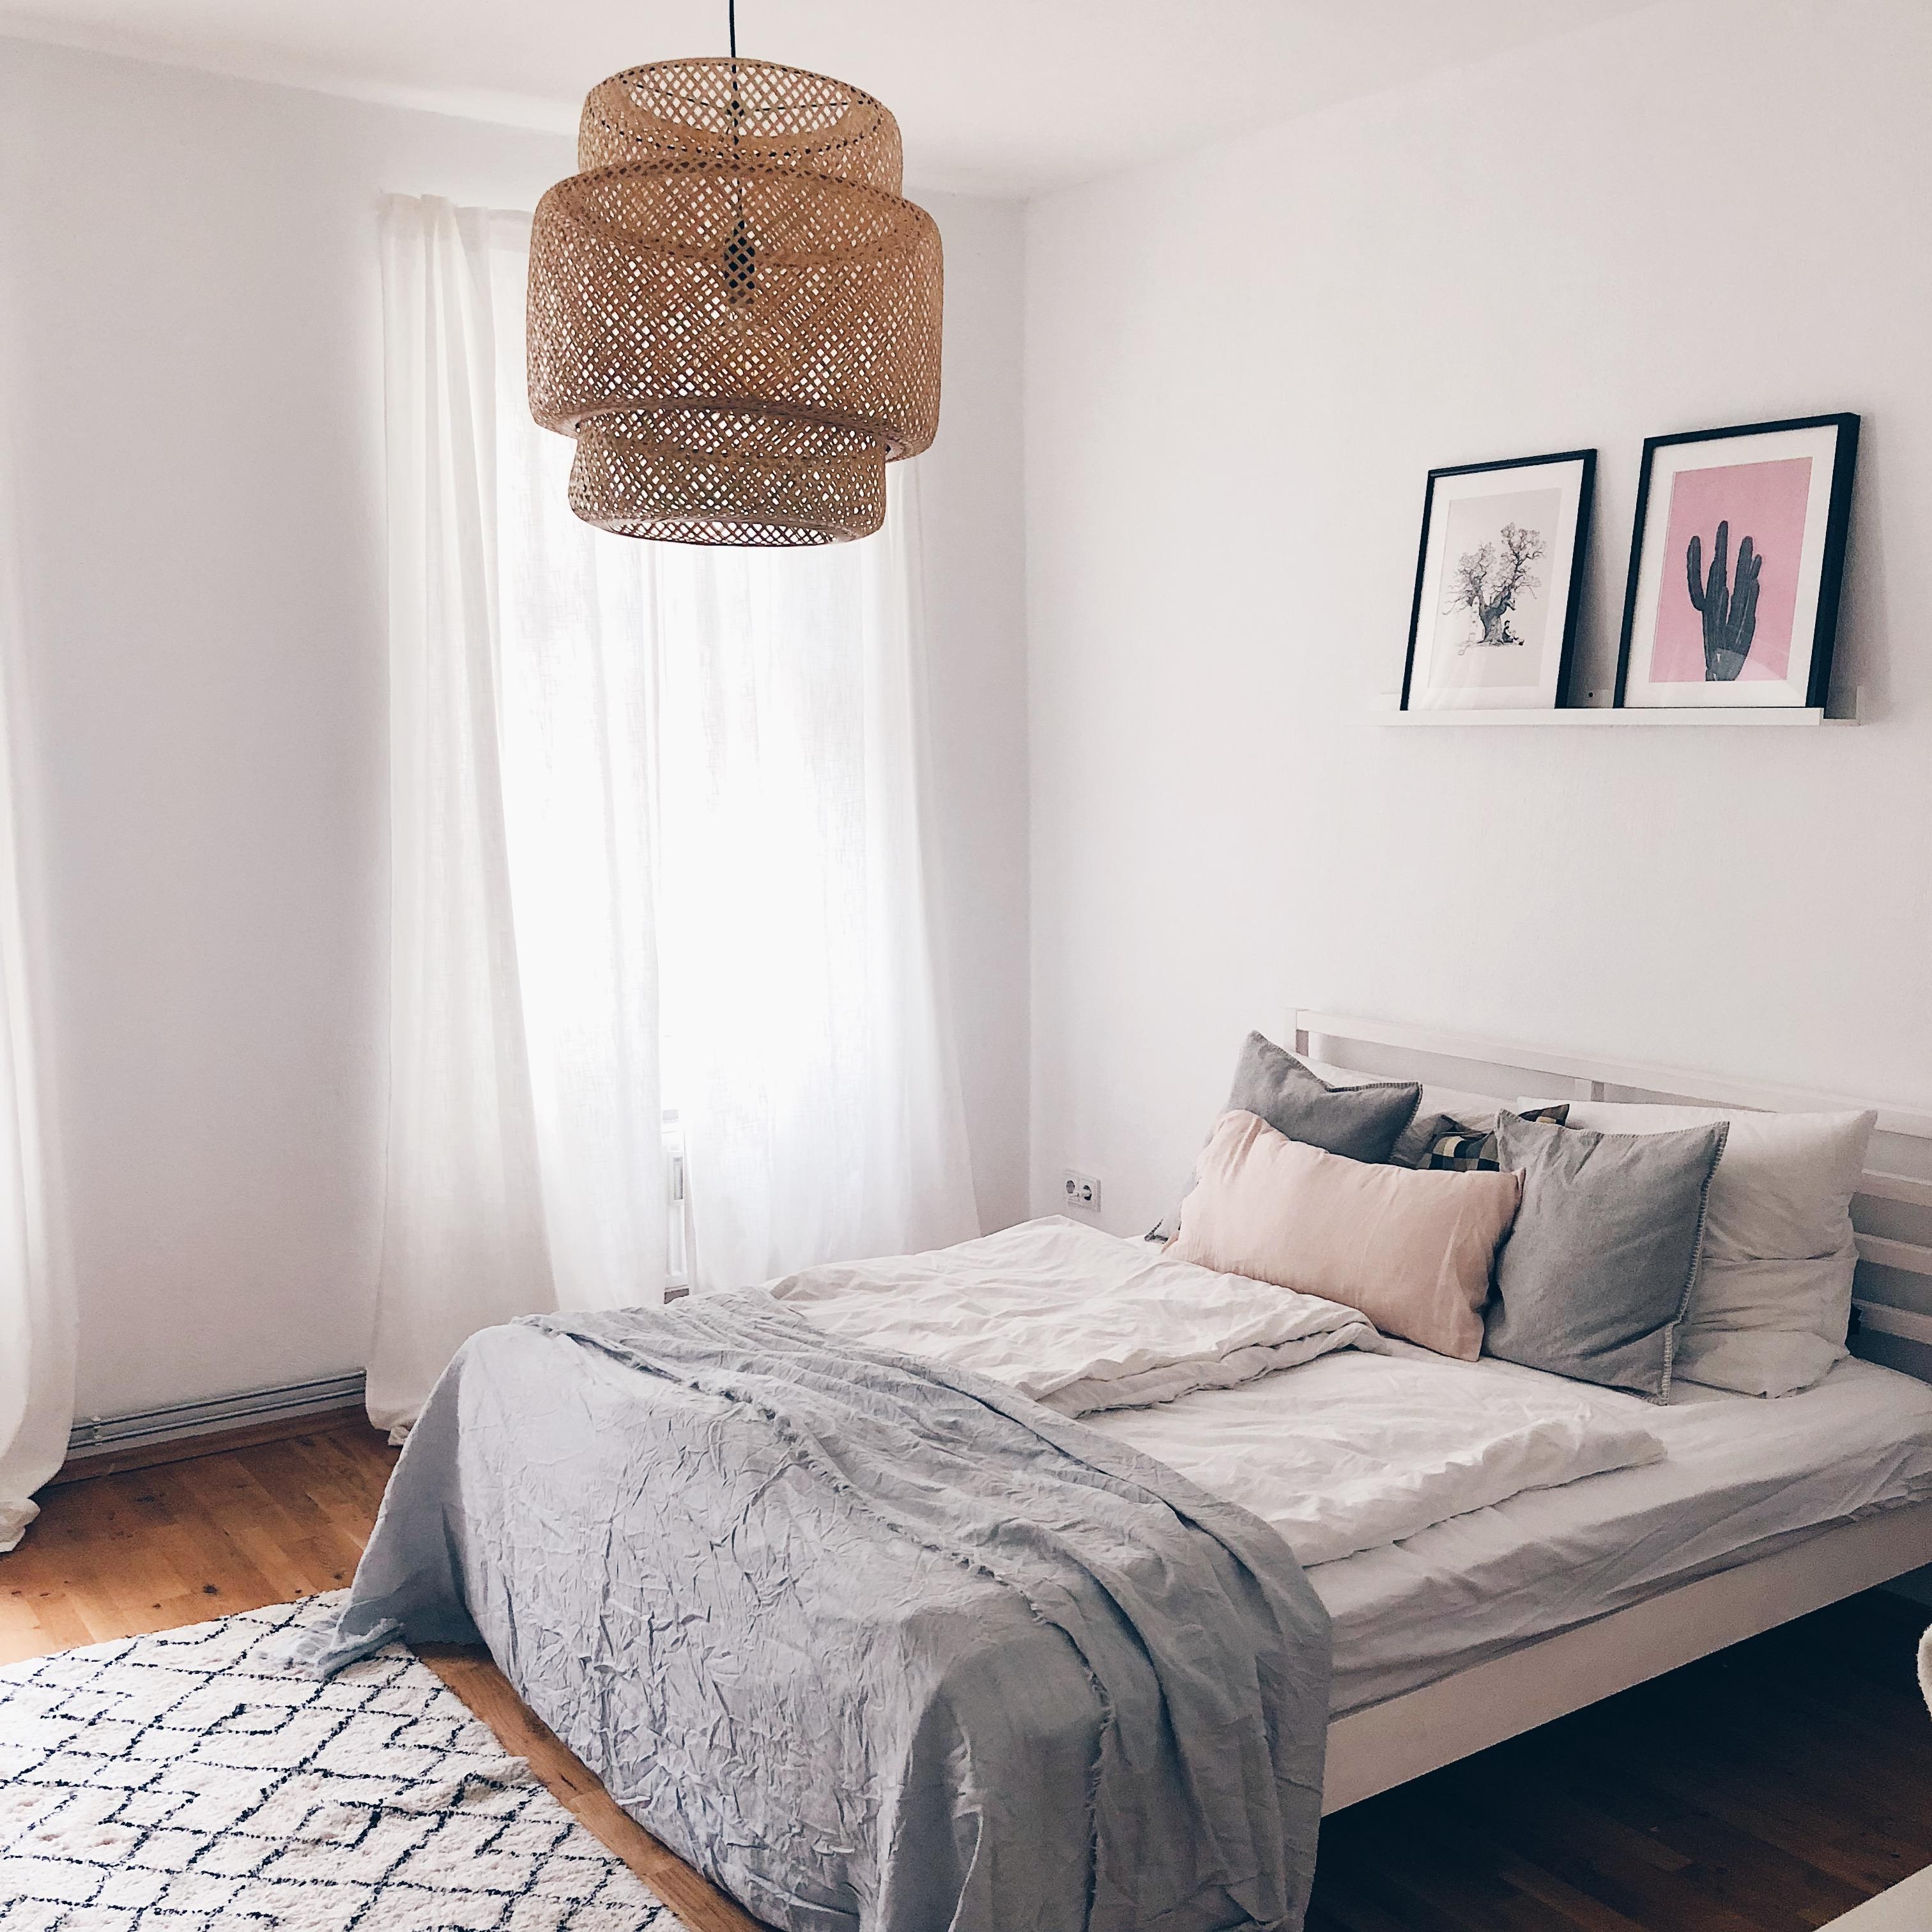 Dieser Moment, wenn dein neues Zuhause langsam Form annimmt 🙌🏻 #interior #bedroom #schlafzimmer